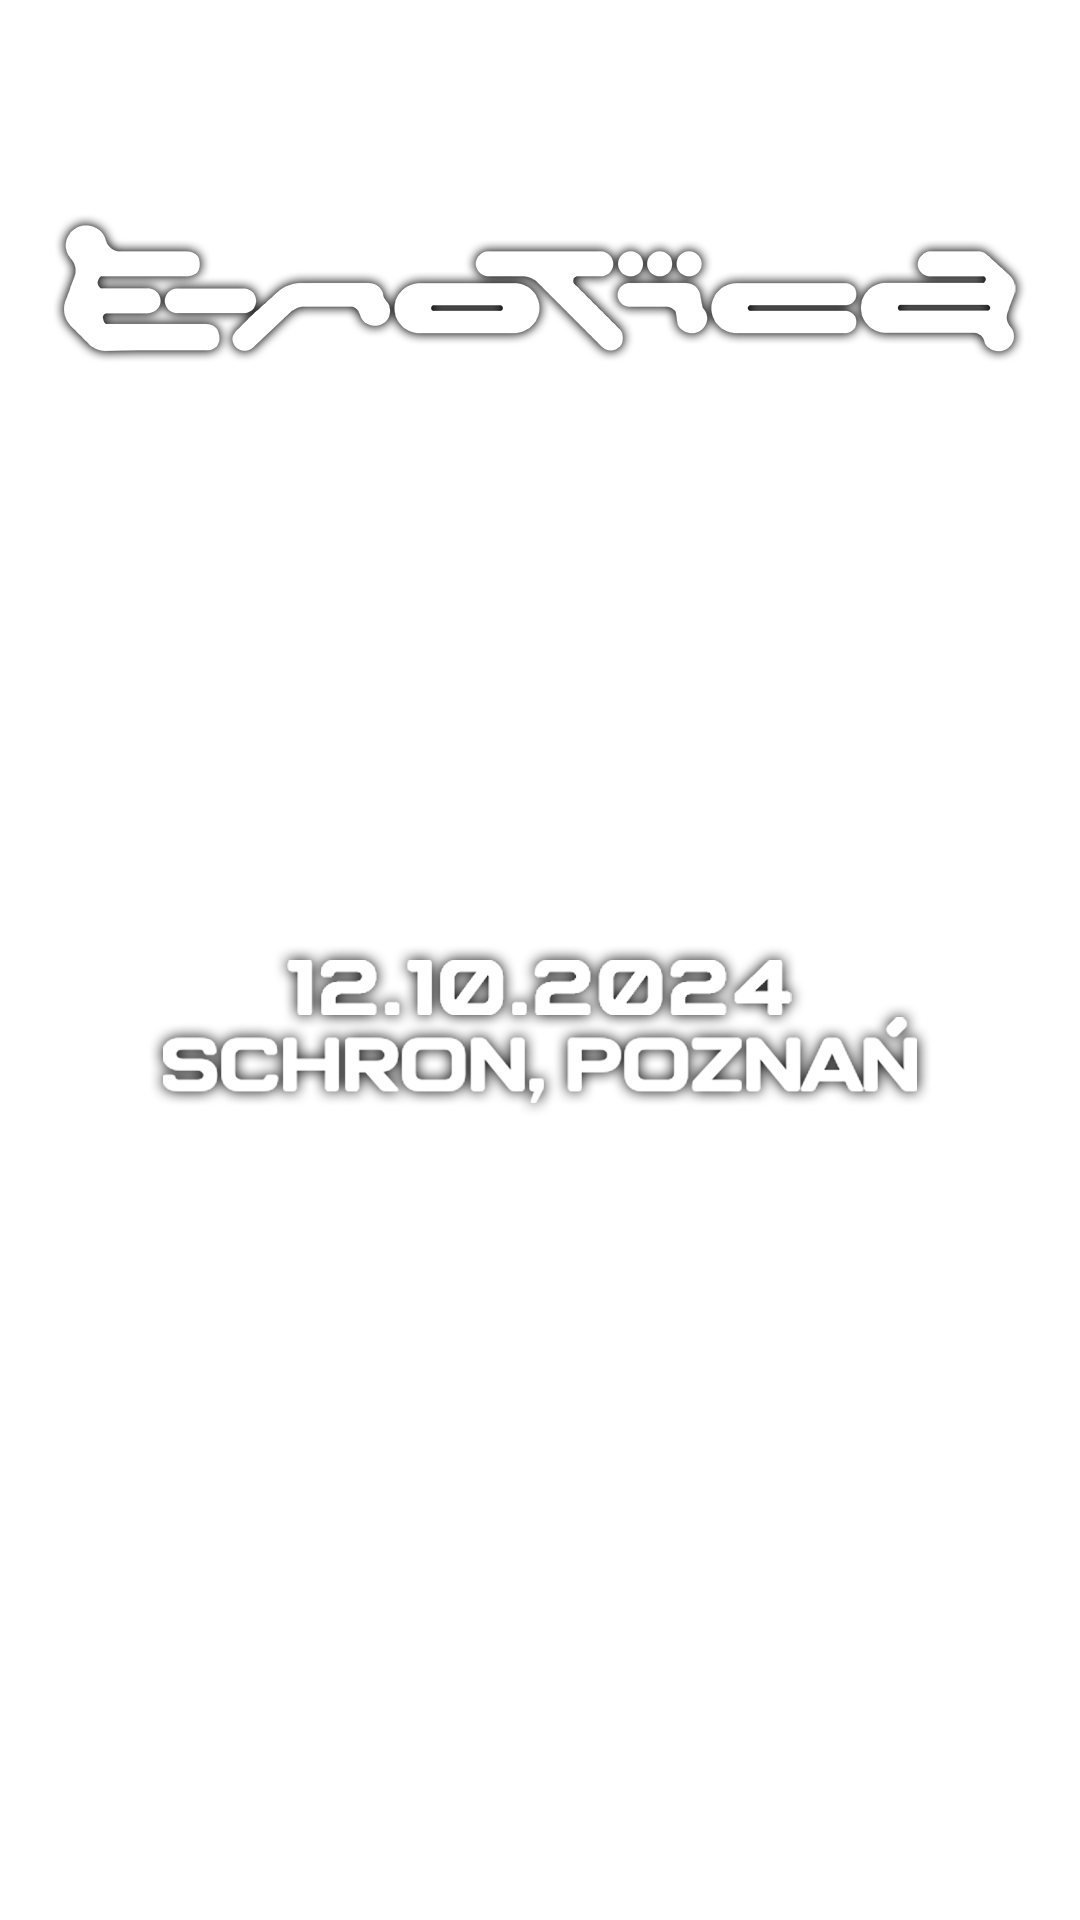 E-ROTICA: 12.10.2024 SCHRON, POZNAŃ